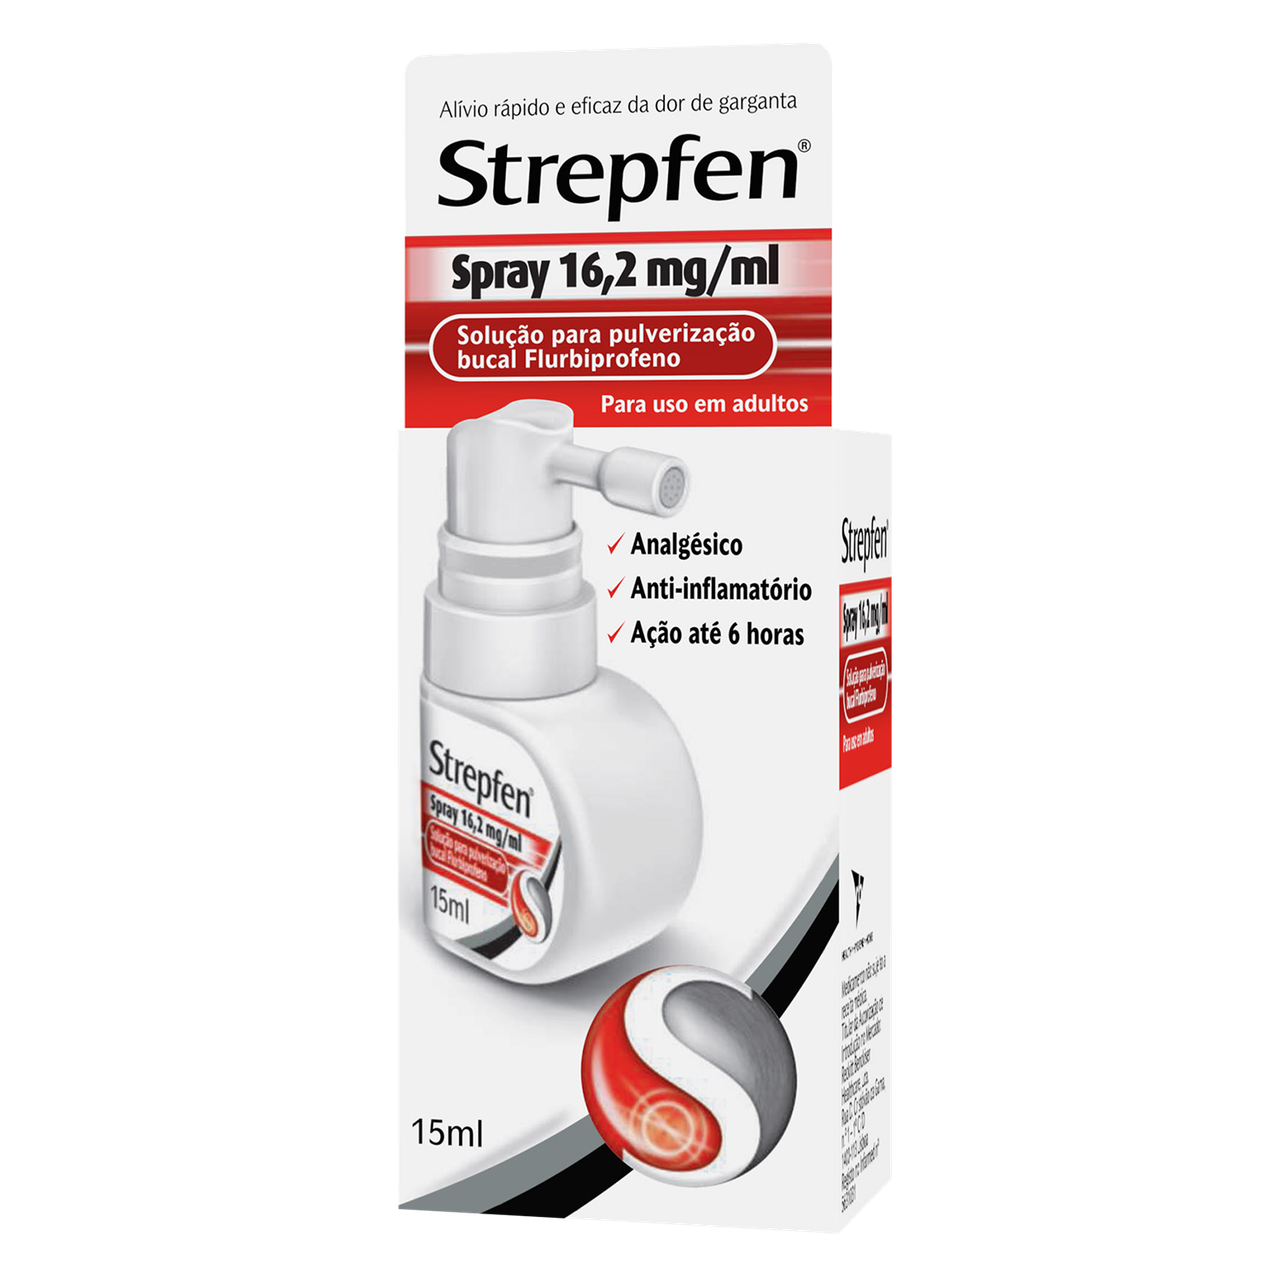 Strepfen Spray, 16,2 mg/mL-15mL x 1 solução pulverização bucal